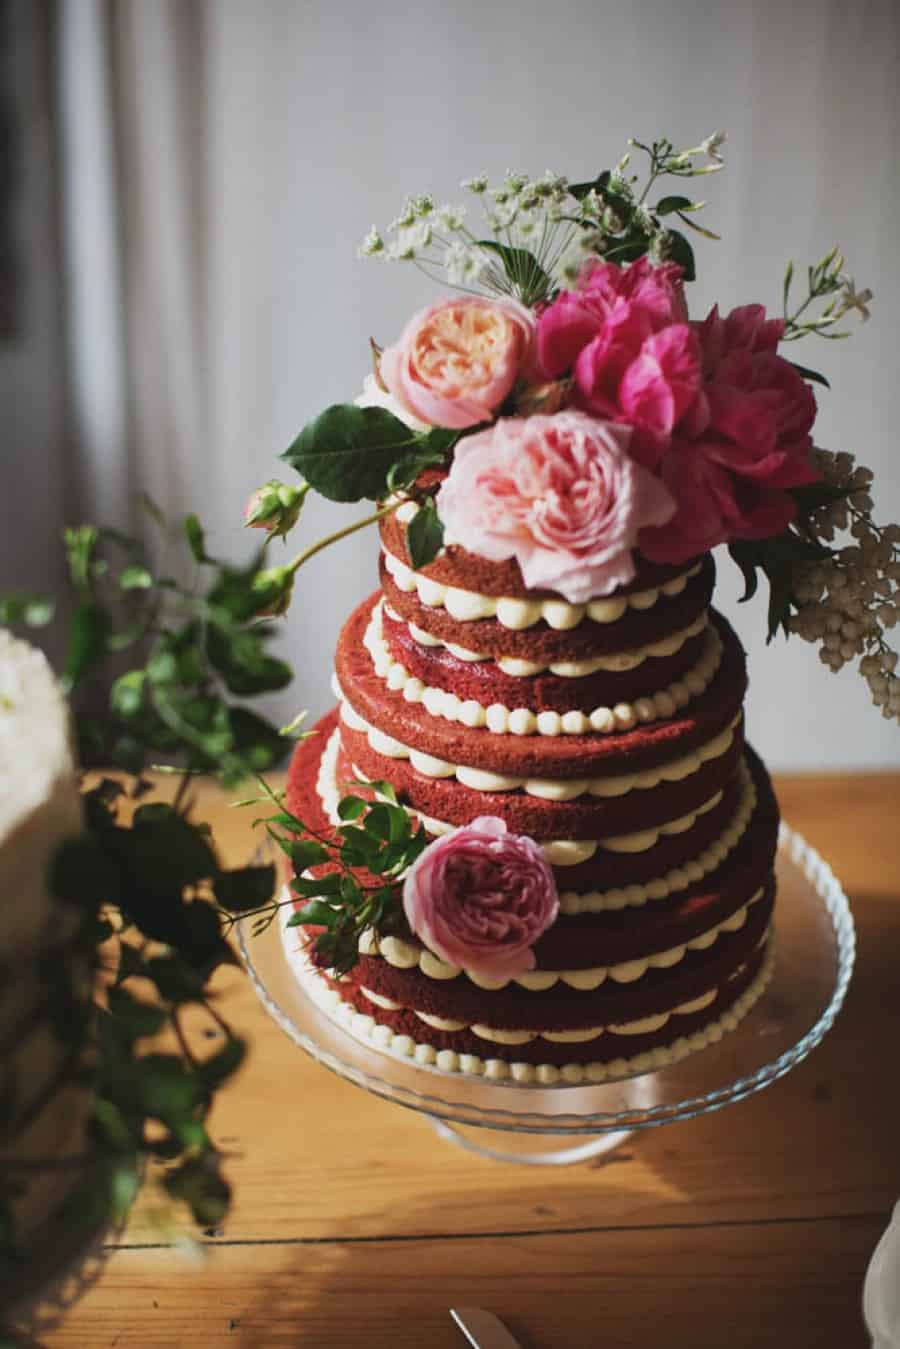 Best wedding cakes of 2016 - red velvet cake